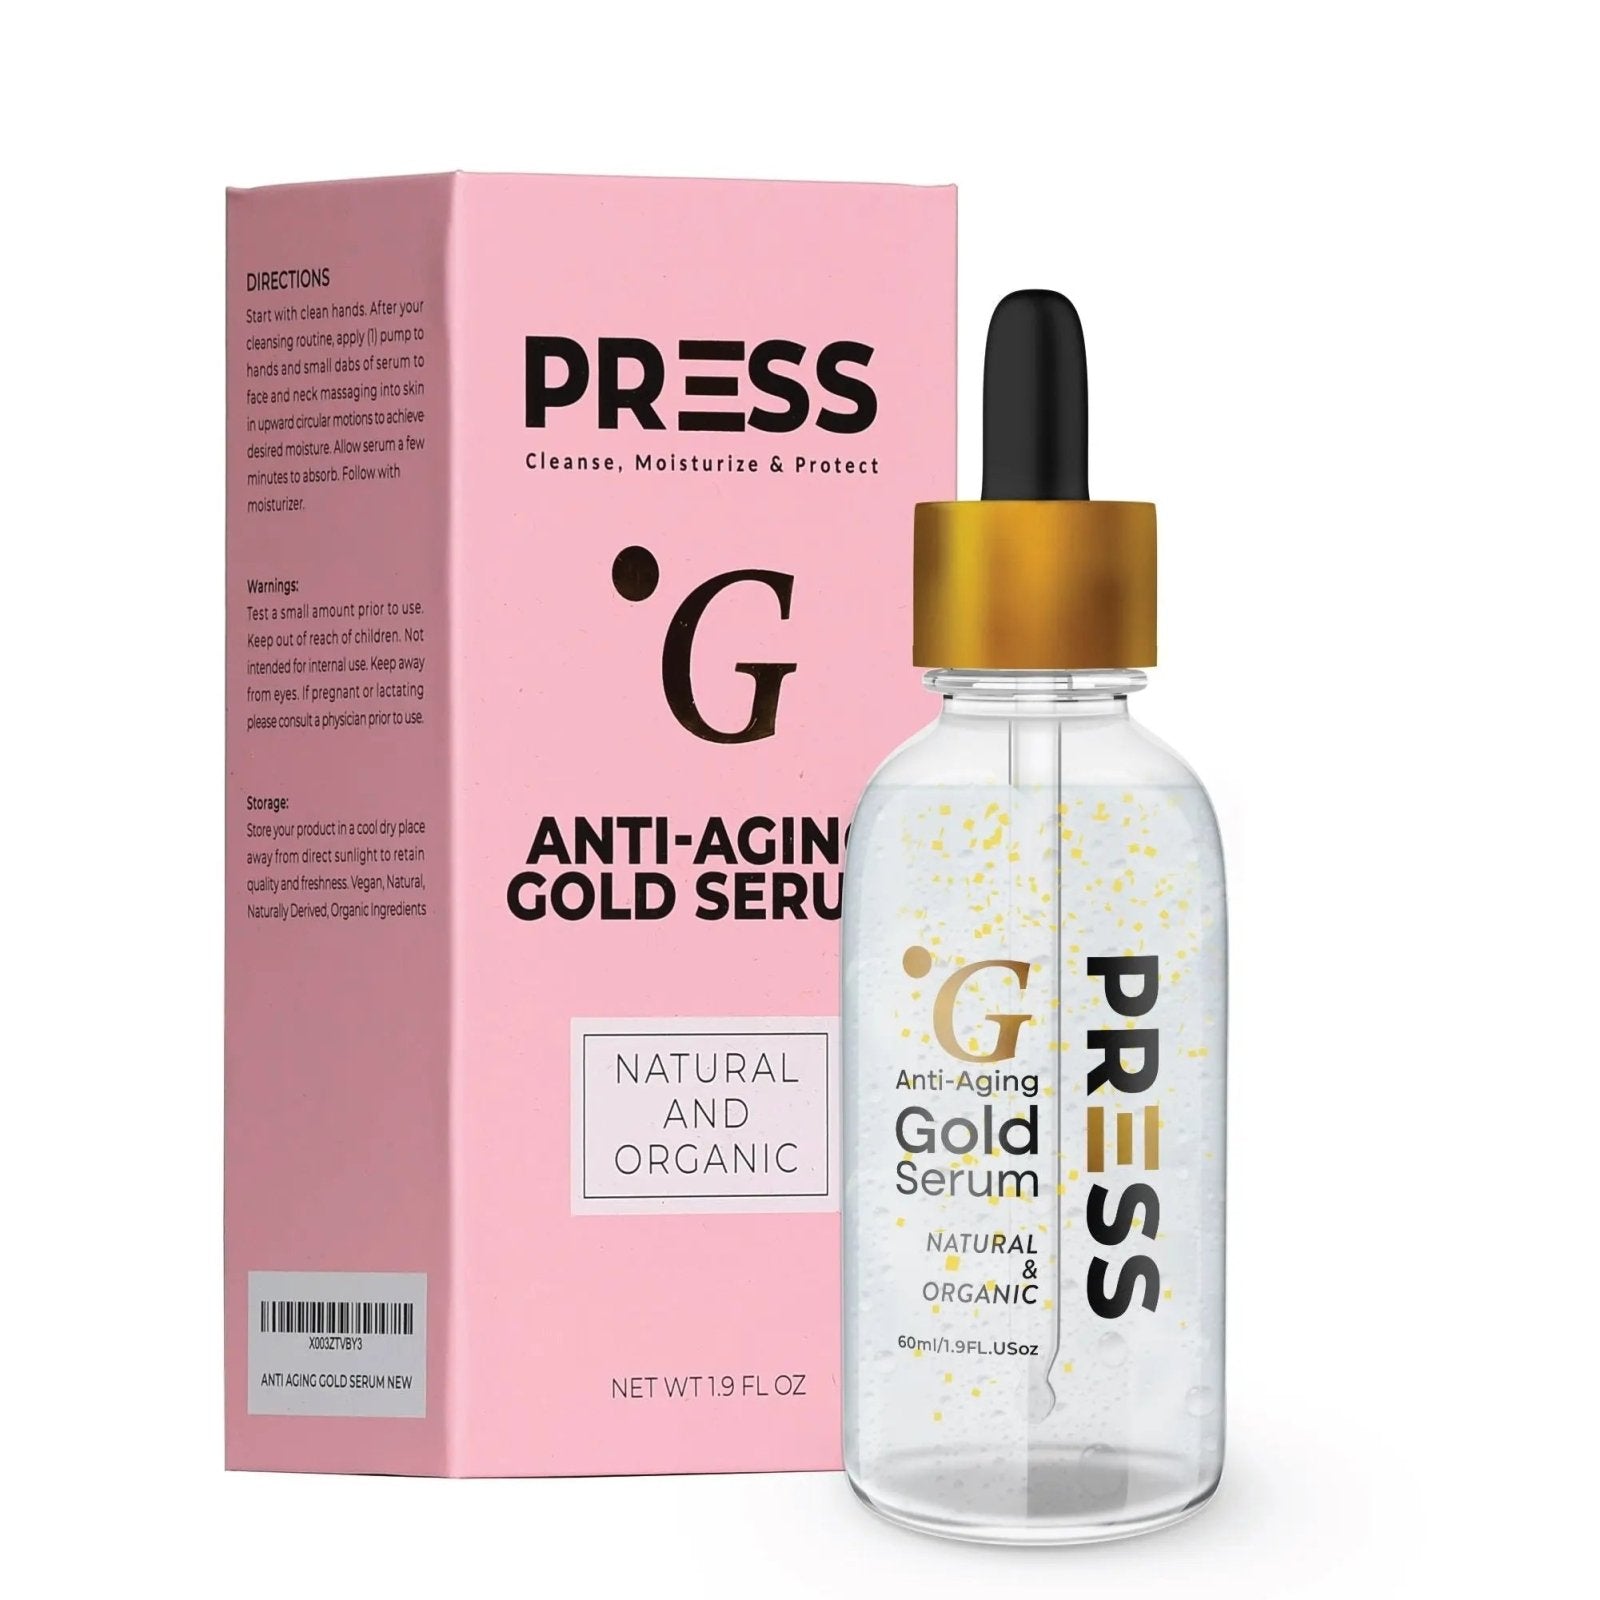 Anti-Aging Gold Serum - Press Skin Care